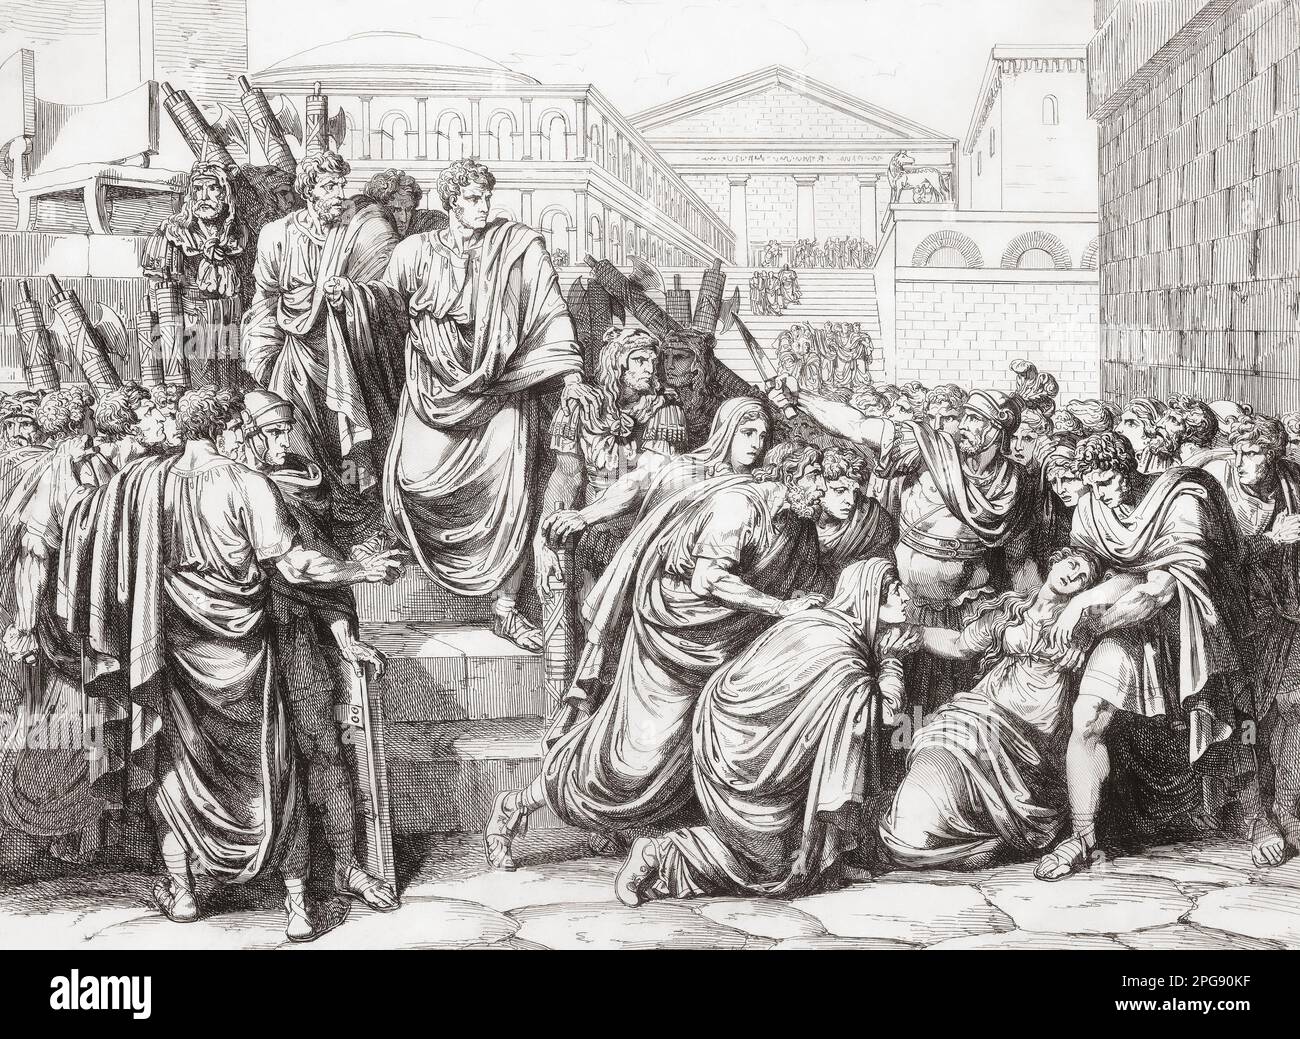 Lucius Virginius tötet seine Tochter Verginia, anstatt zuzulassen, dass sie von römischem Senator Appius Claudius missbraucht wird. Obwohl Appius Claudius eine historische Figur ist, die Geschichte der Vergenia, wird der Vorfall als Erfindung betrachtet. Nach einem Werk aus dem 19. Jahrhundert von Bartolomeo Pinelli. Stockfoto